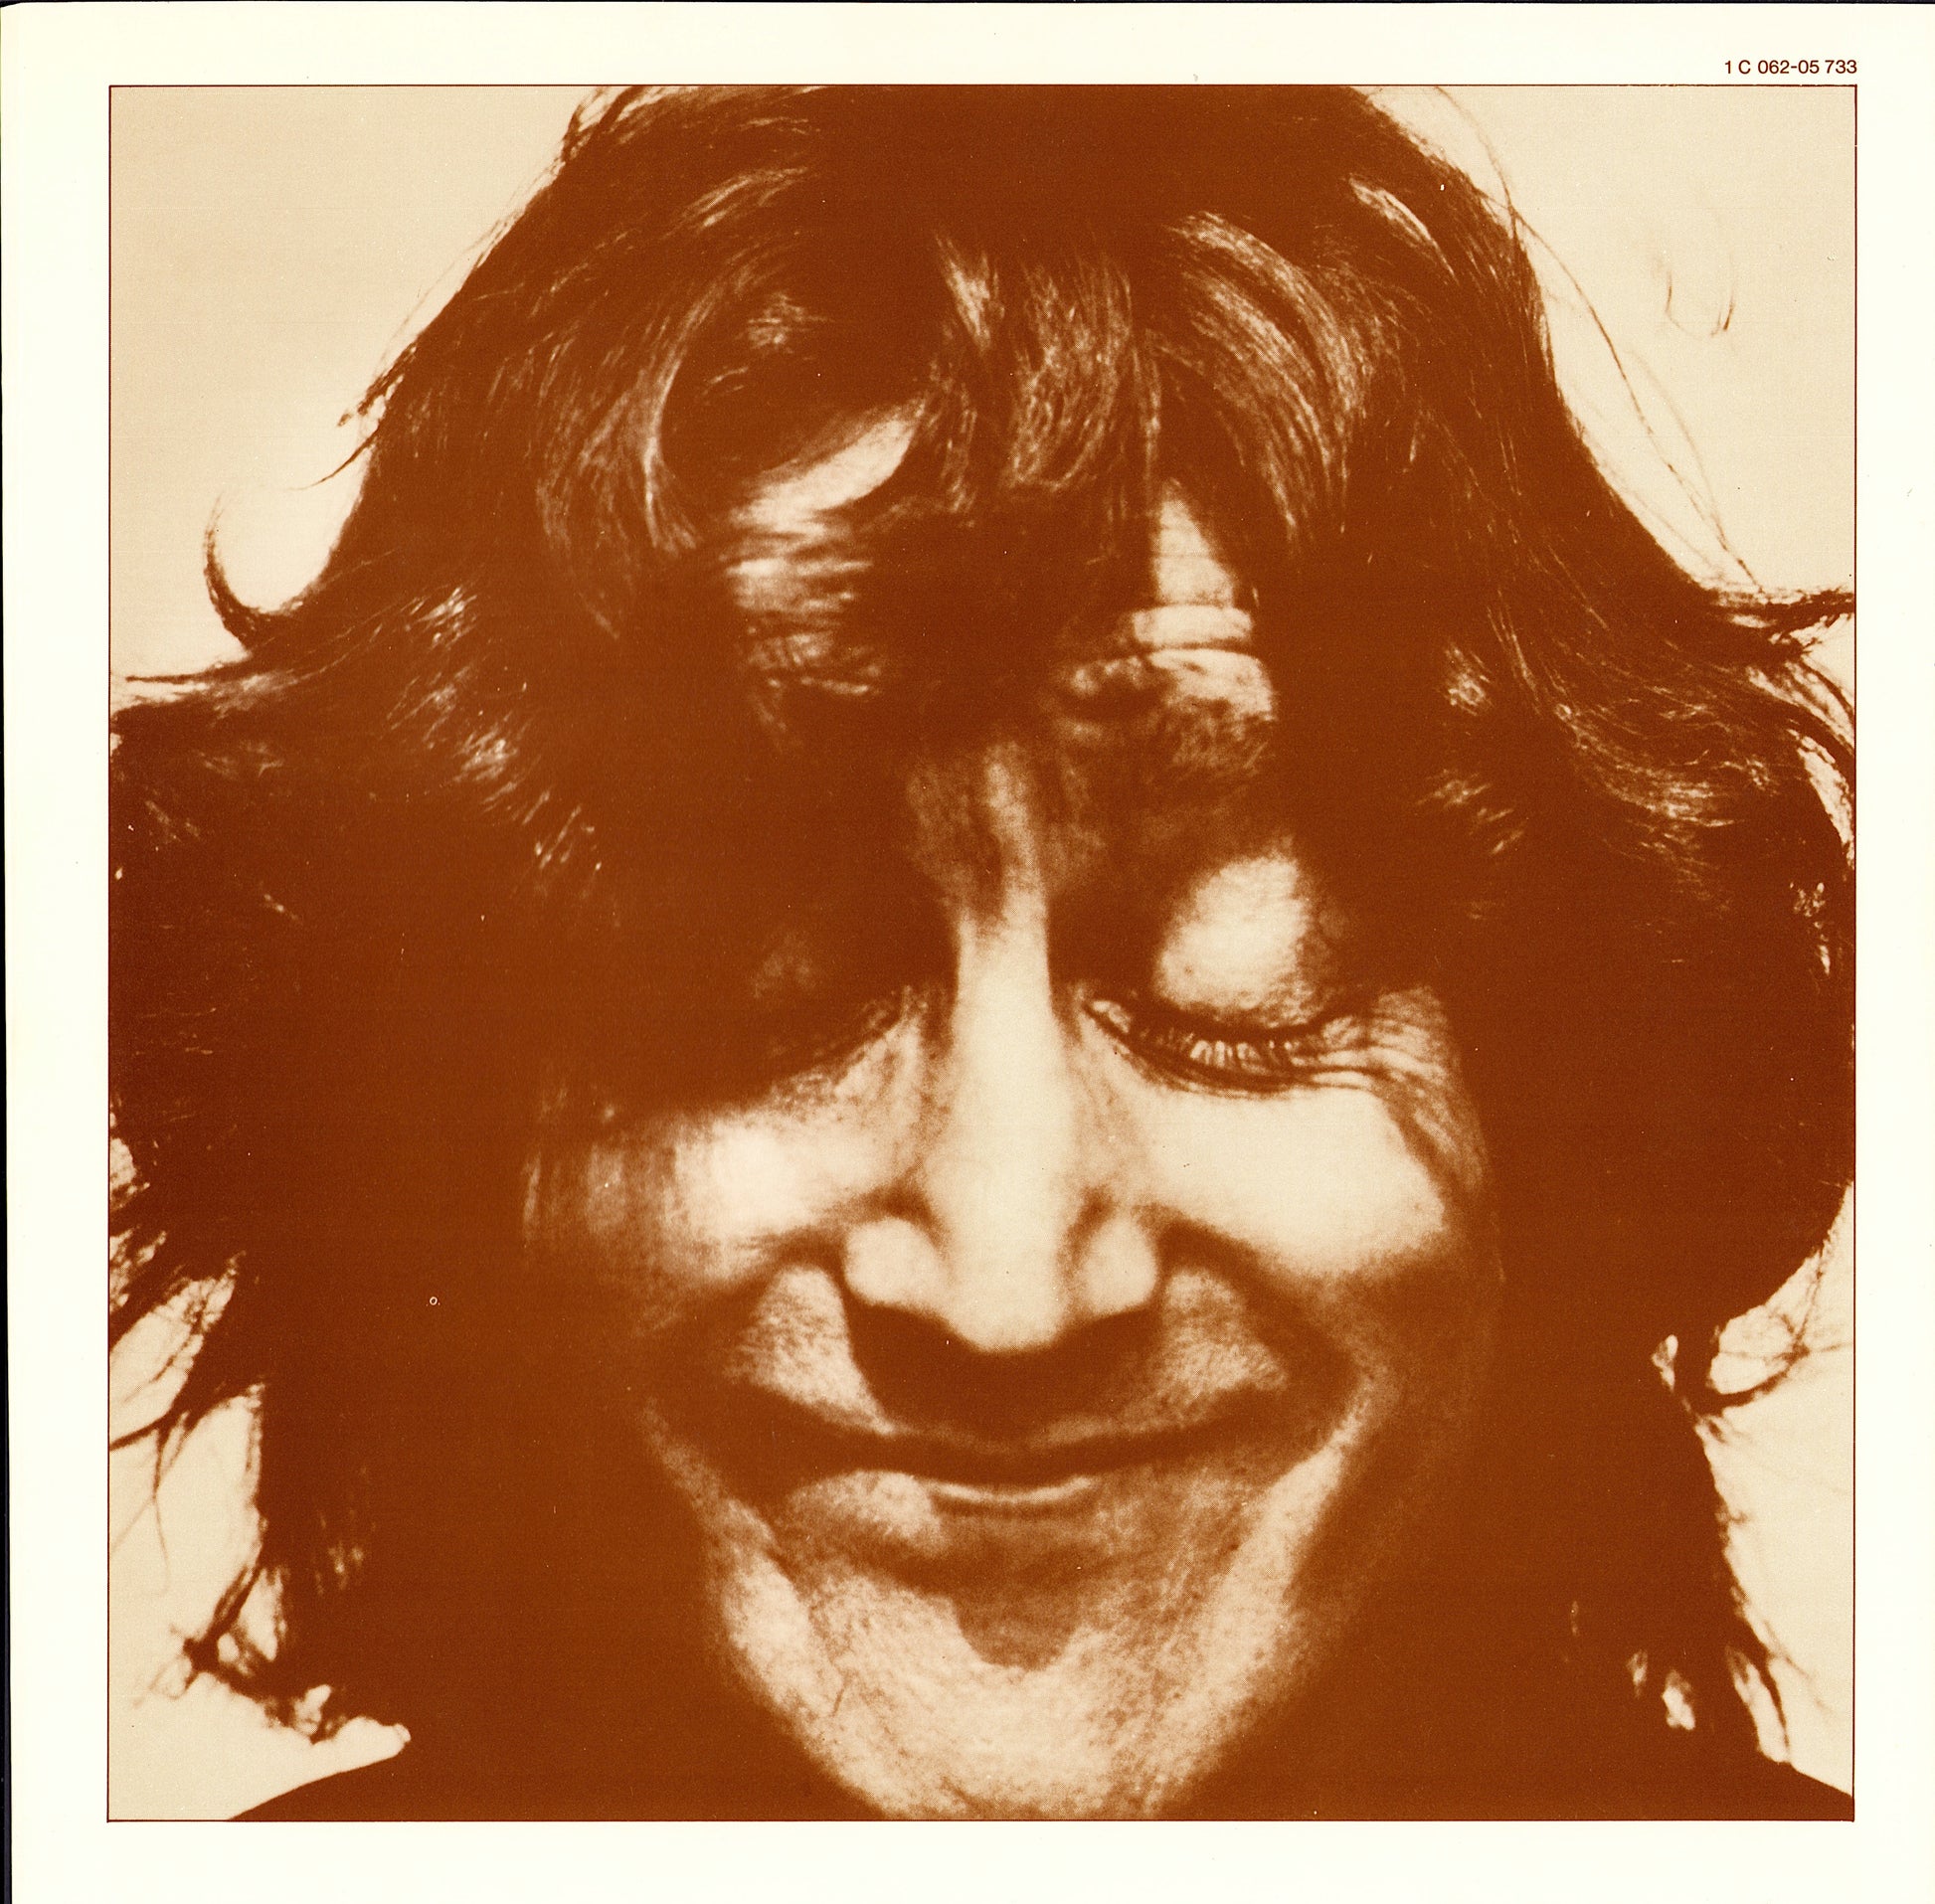 John Lennon - Walls And Bridges Vinyl LP